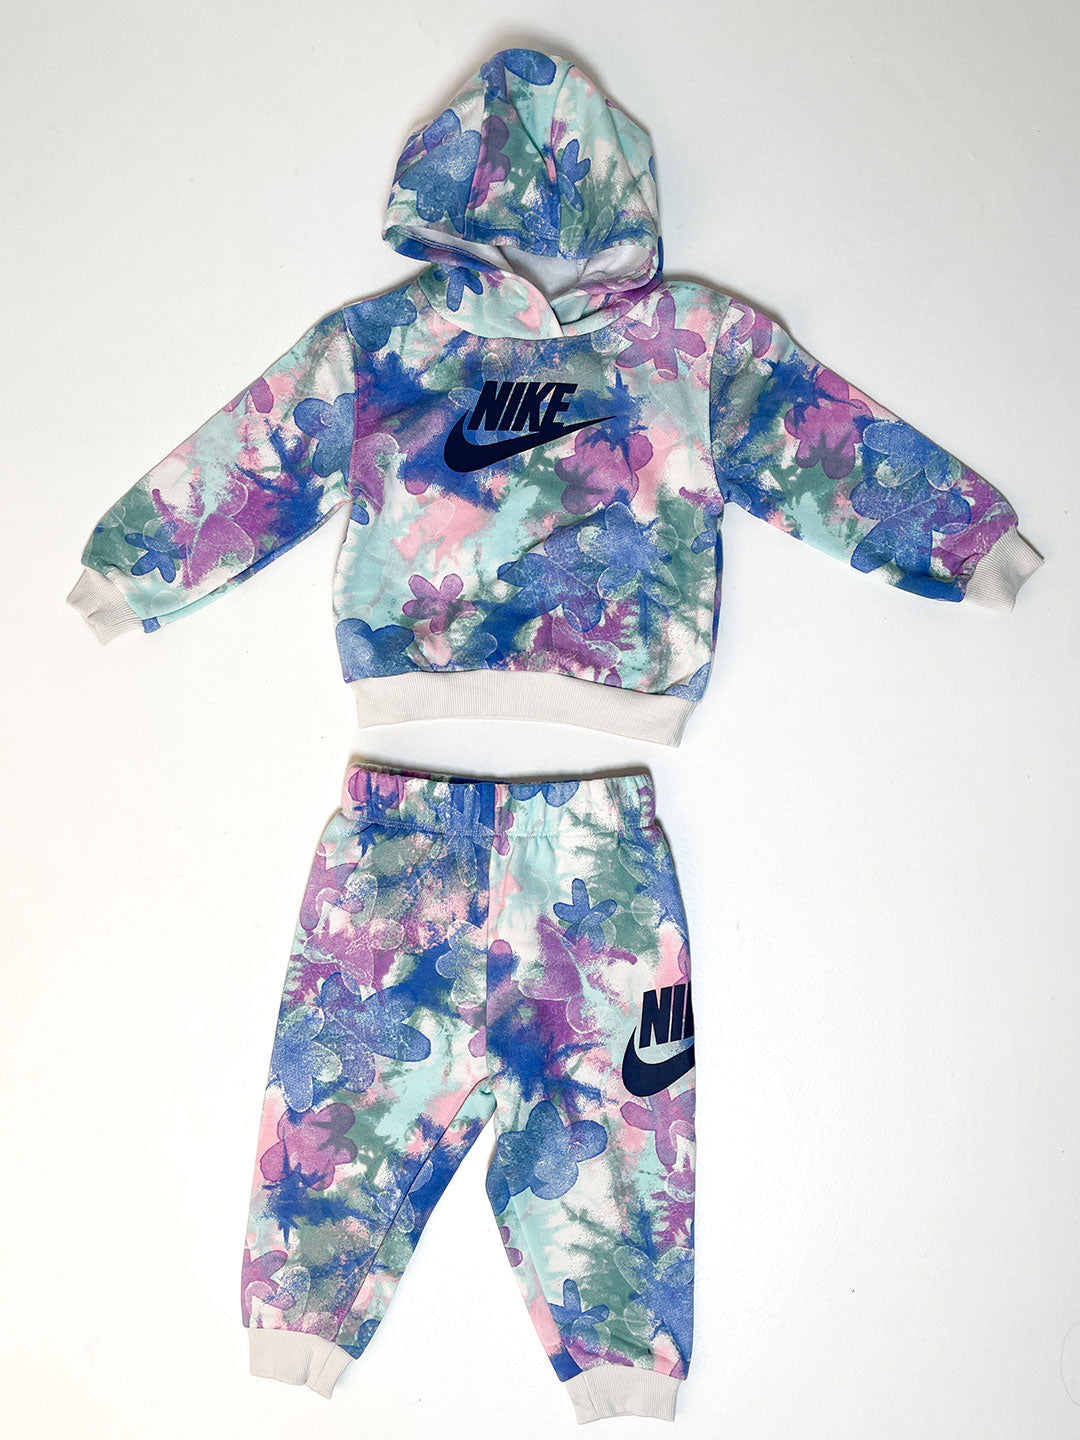 Nike coordinato kids a fantasia con fiori blu